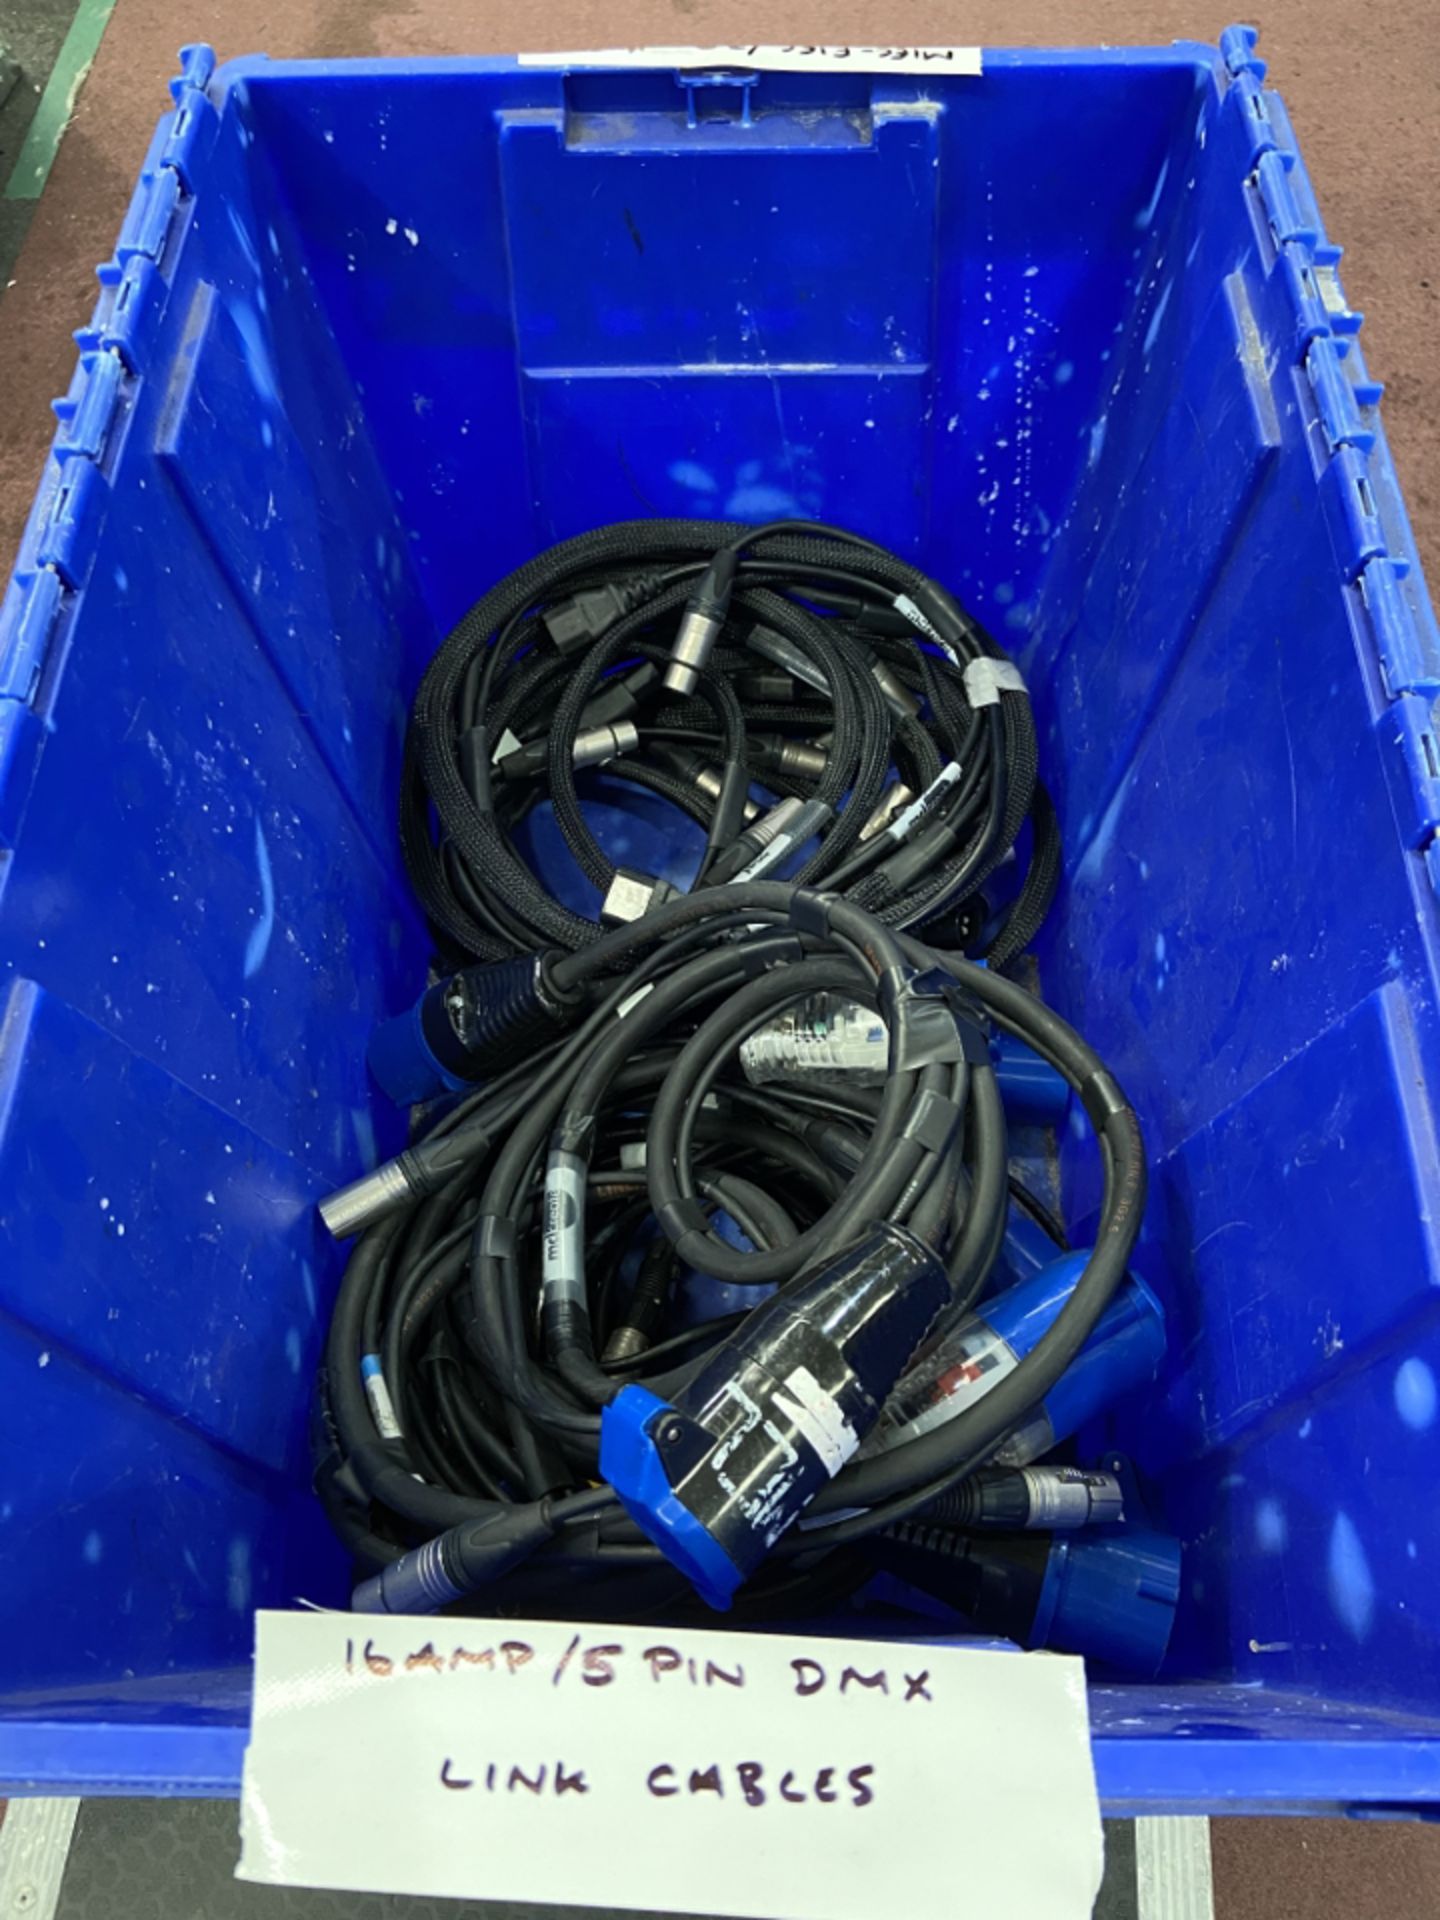 Quantity of 16 amp / 5 pin DMX link cables: Unit 500, Eckersall Road, Birmingham B38 8SE